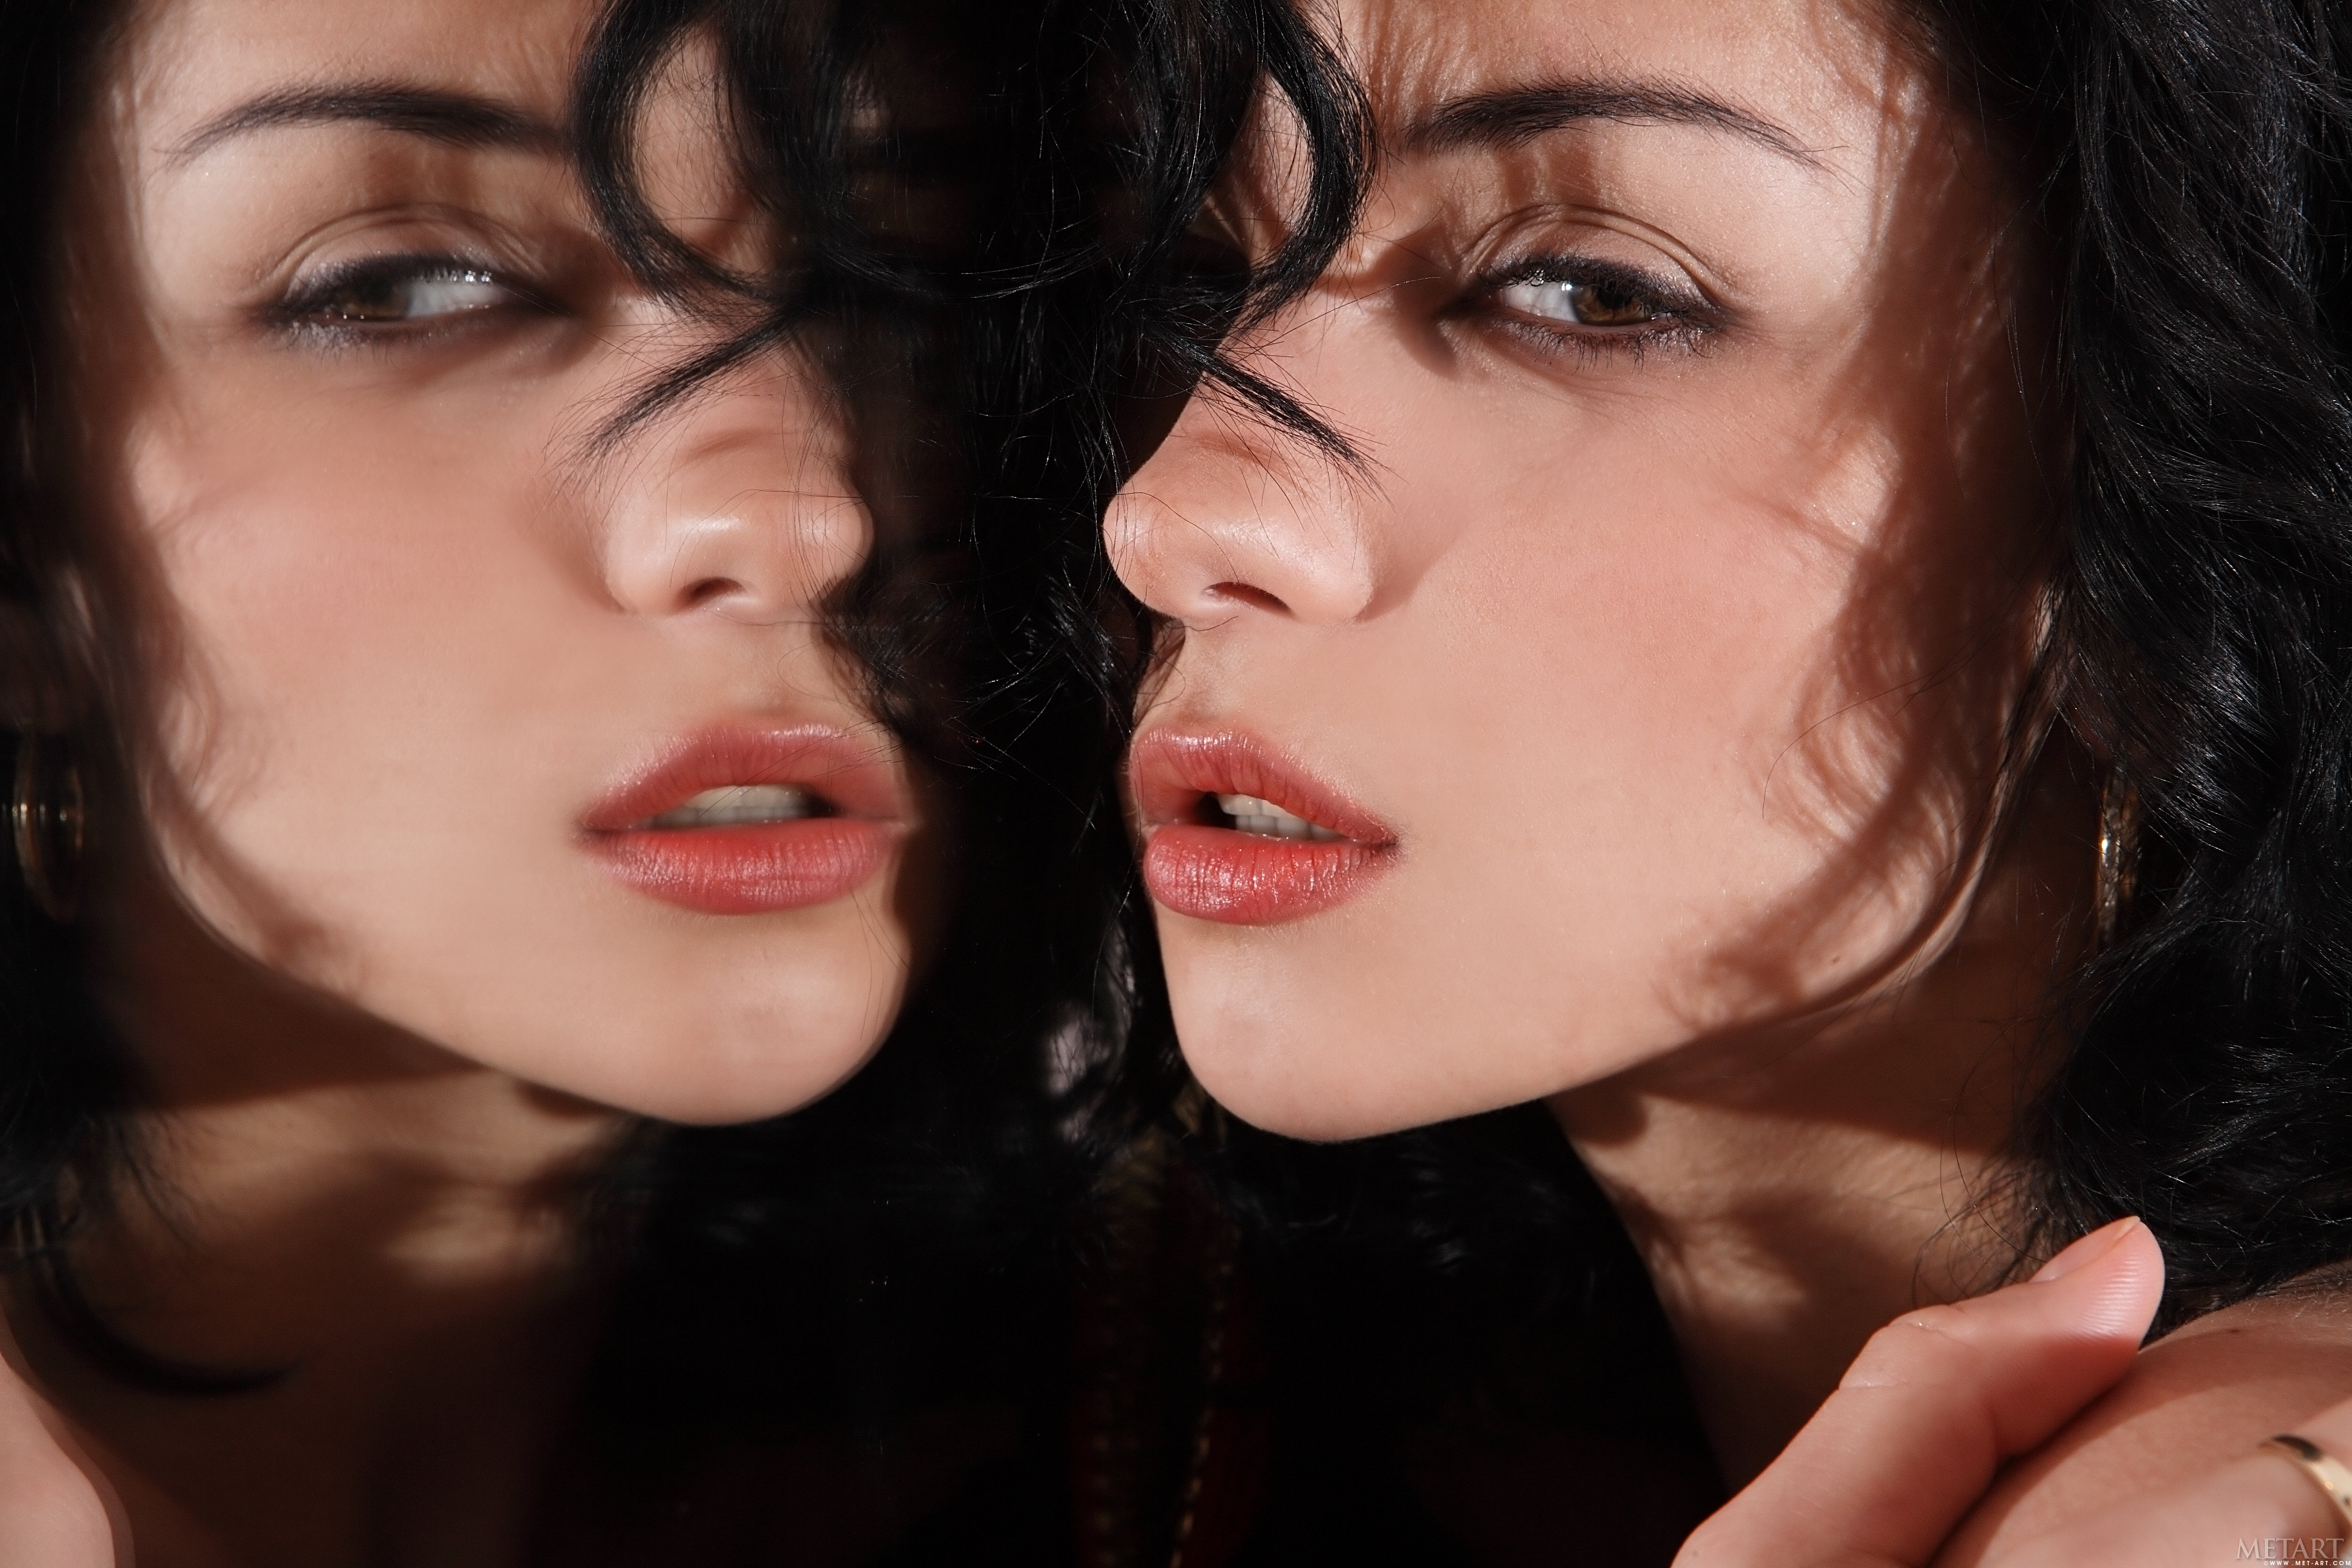 Dark Hair Women Ukrainian Women Face Mirror Reflection Closeup Model Brunette 4992x3328